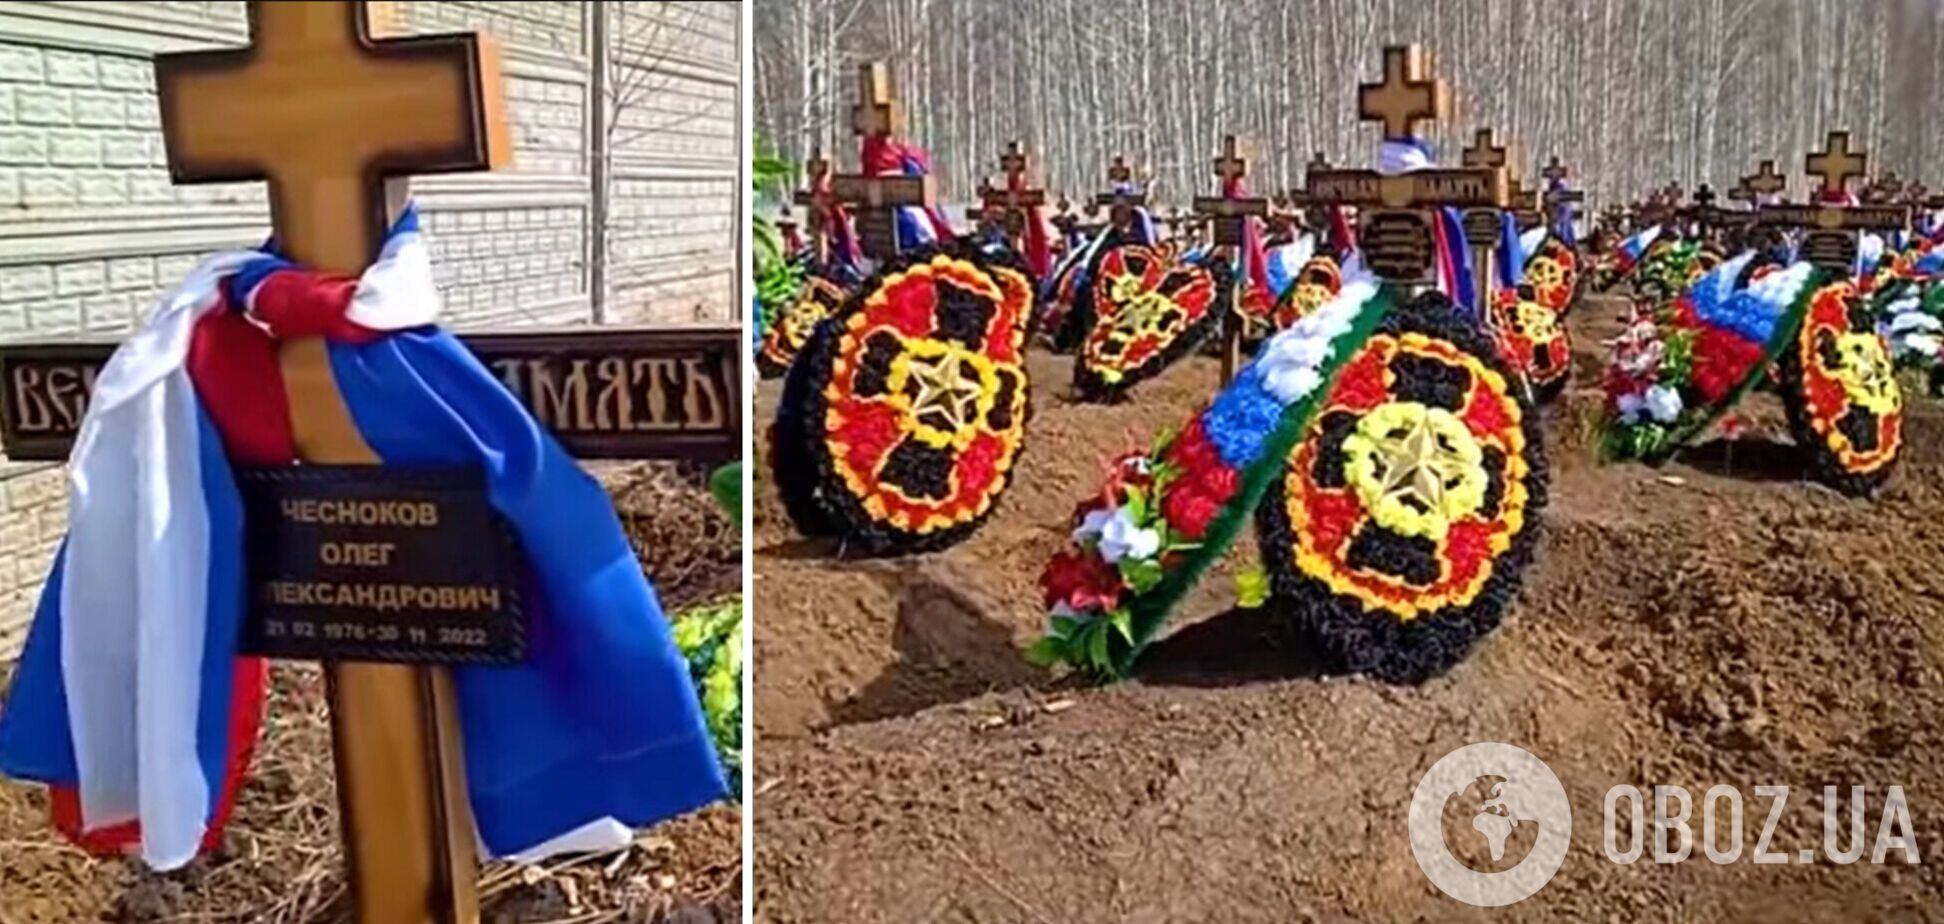 Сотні могил із символікою ПВК 'Вагнер': у Новосибірську знайшли масове поховання. Відео